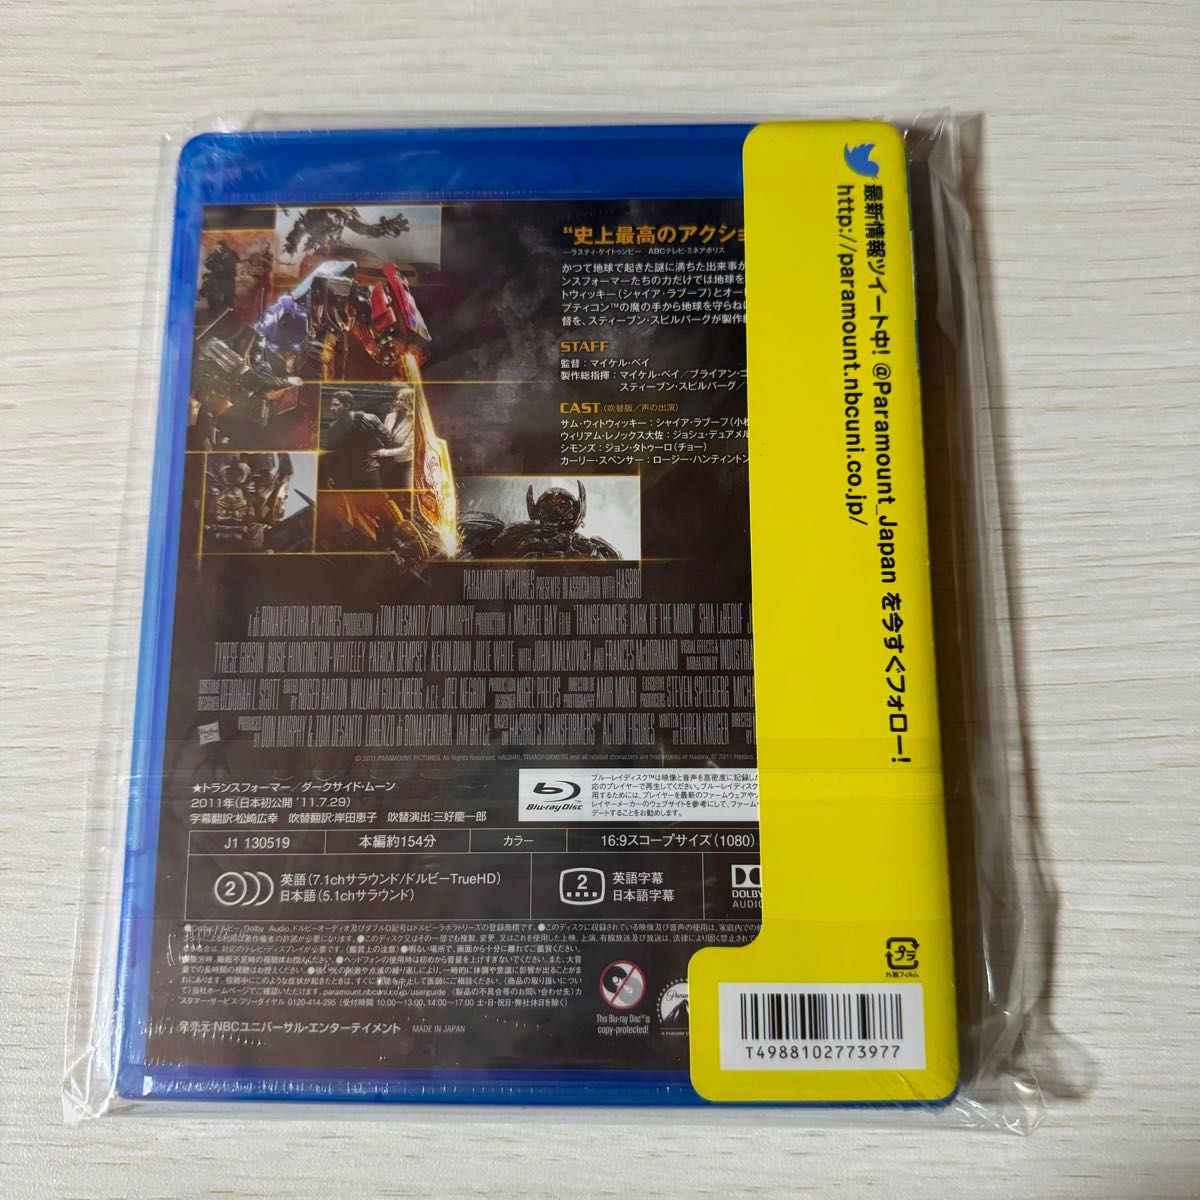 トランスフォーマー/ダークサイドムーン (Blu-ray Disc) シャイアラブーフ 未開封